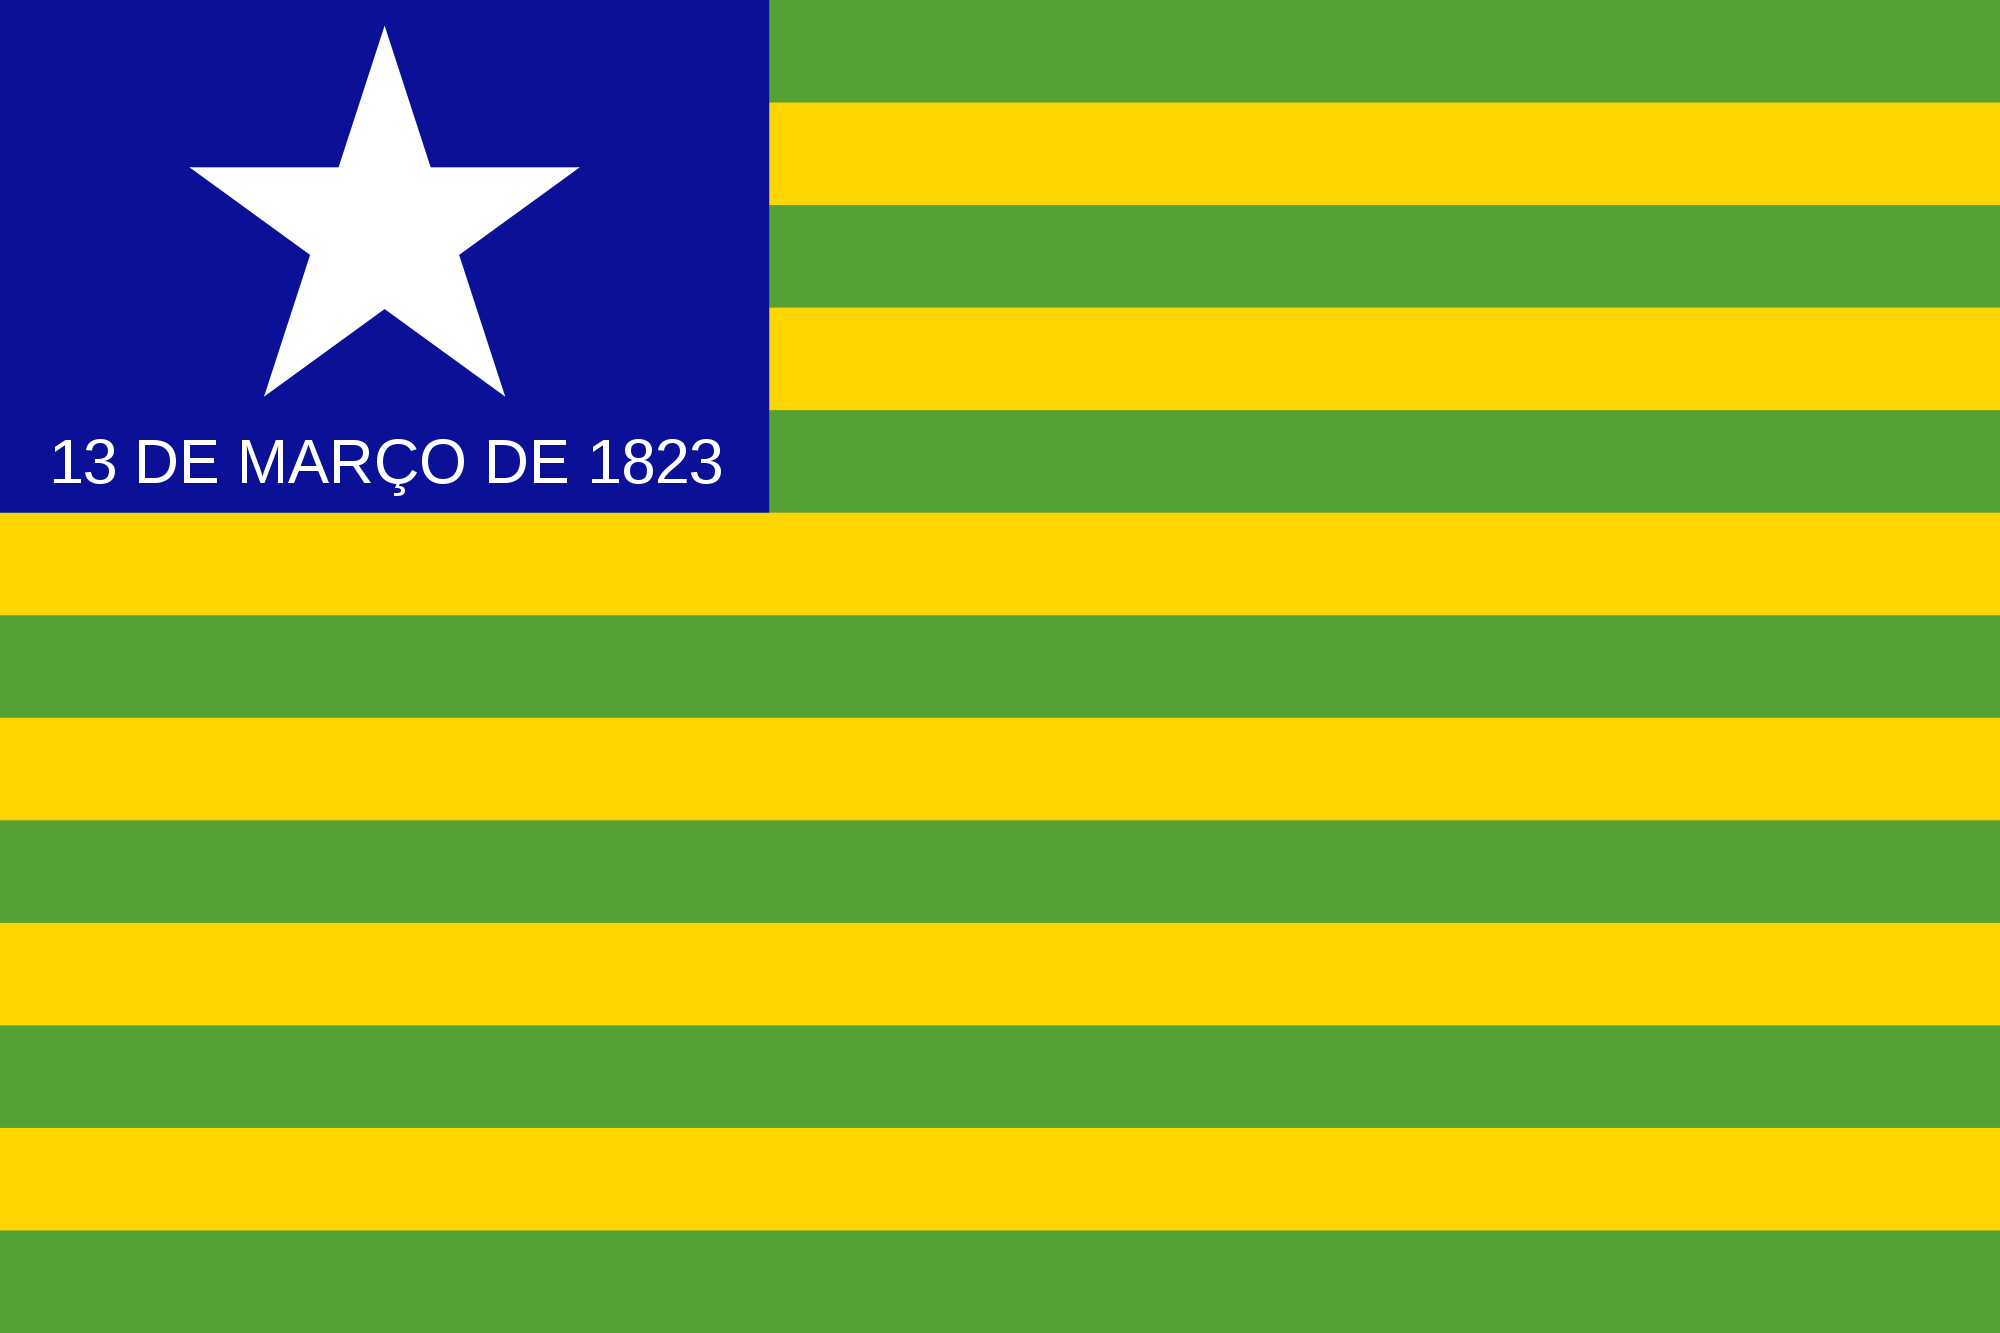 Geografia do Piauí